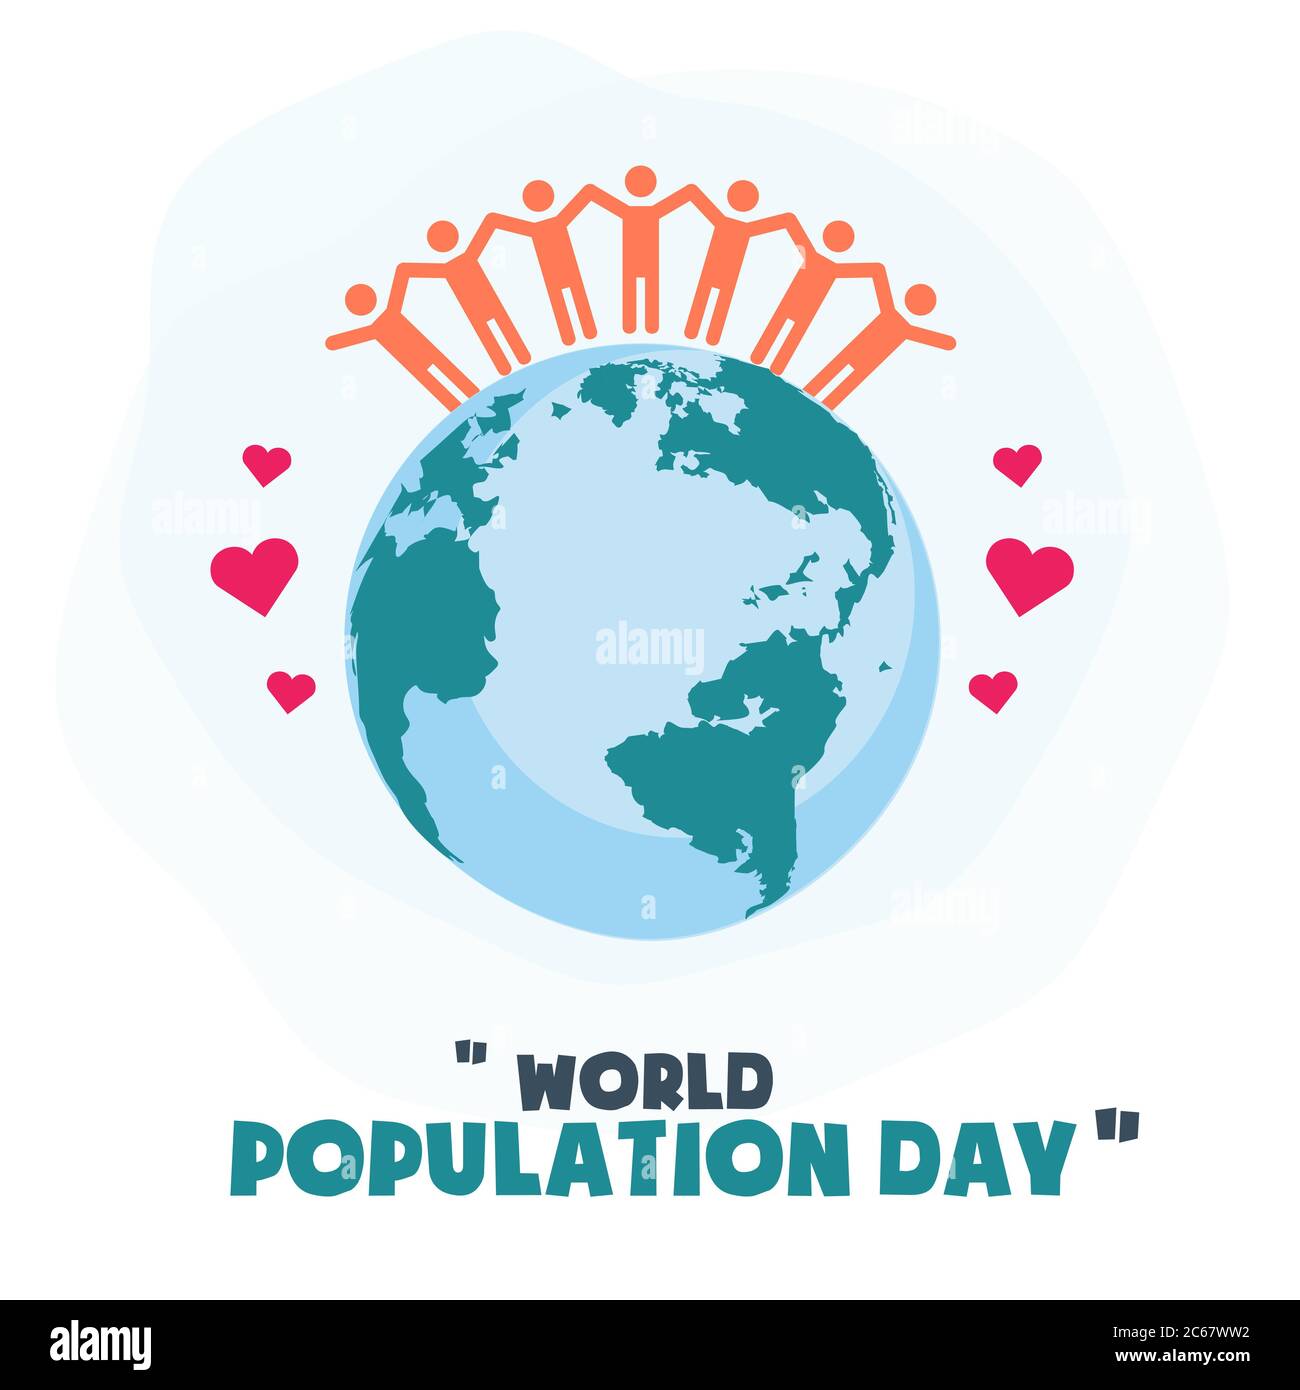 Weltbevölkerungstag, Menschen Freundschaft auf der Erde Globus, Poster, Vorlage für Web, Vektor-Illustration Stock Vektor